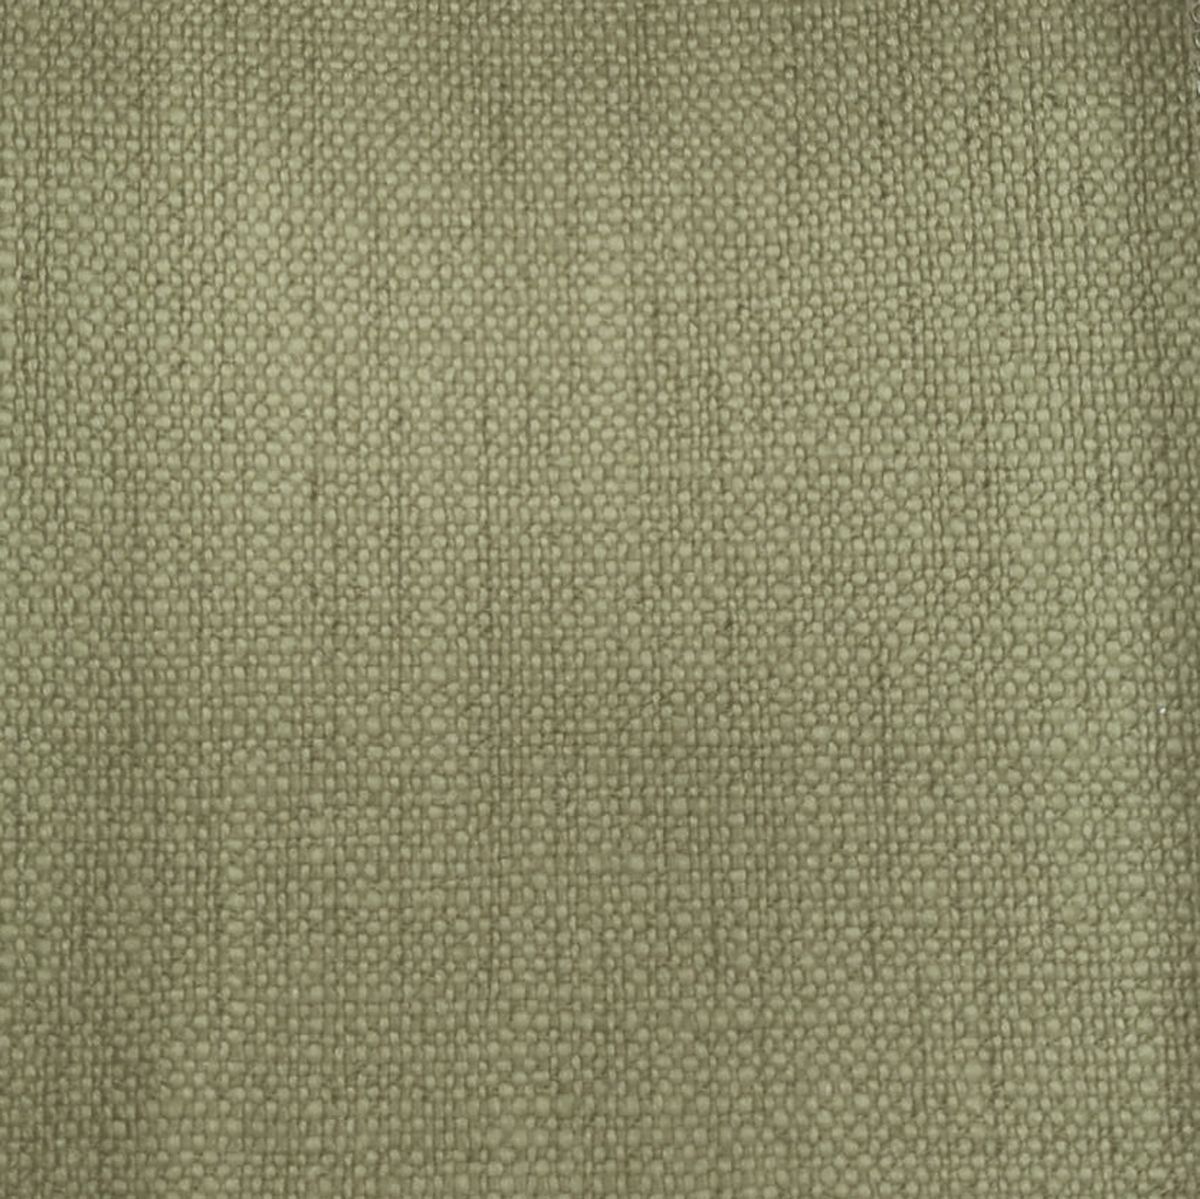 Trento Khaki Fabric by Voyage Maison